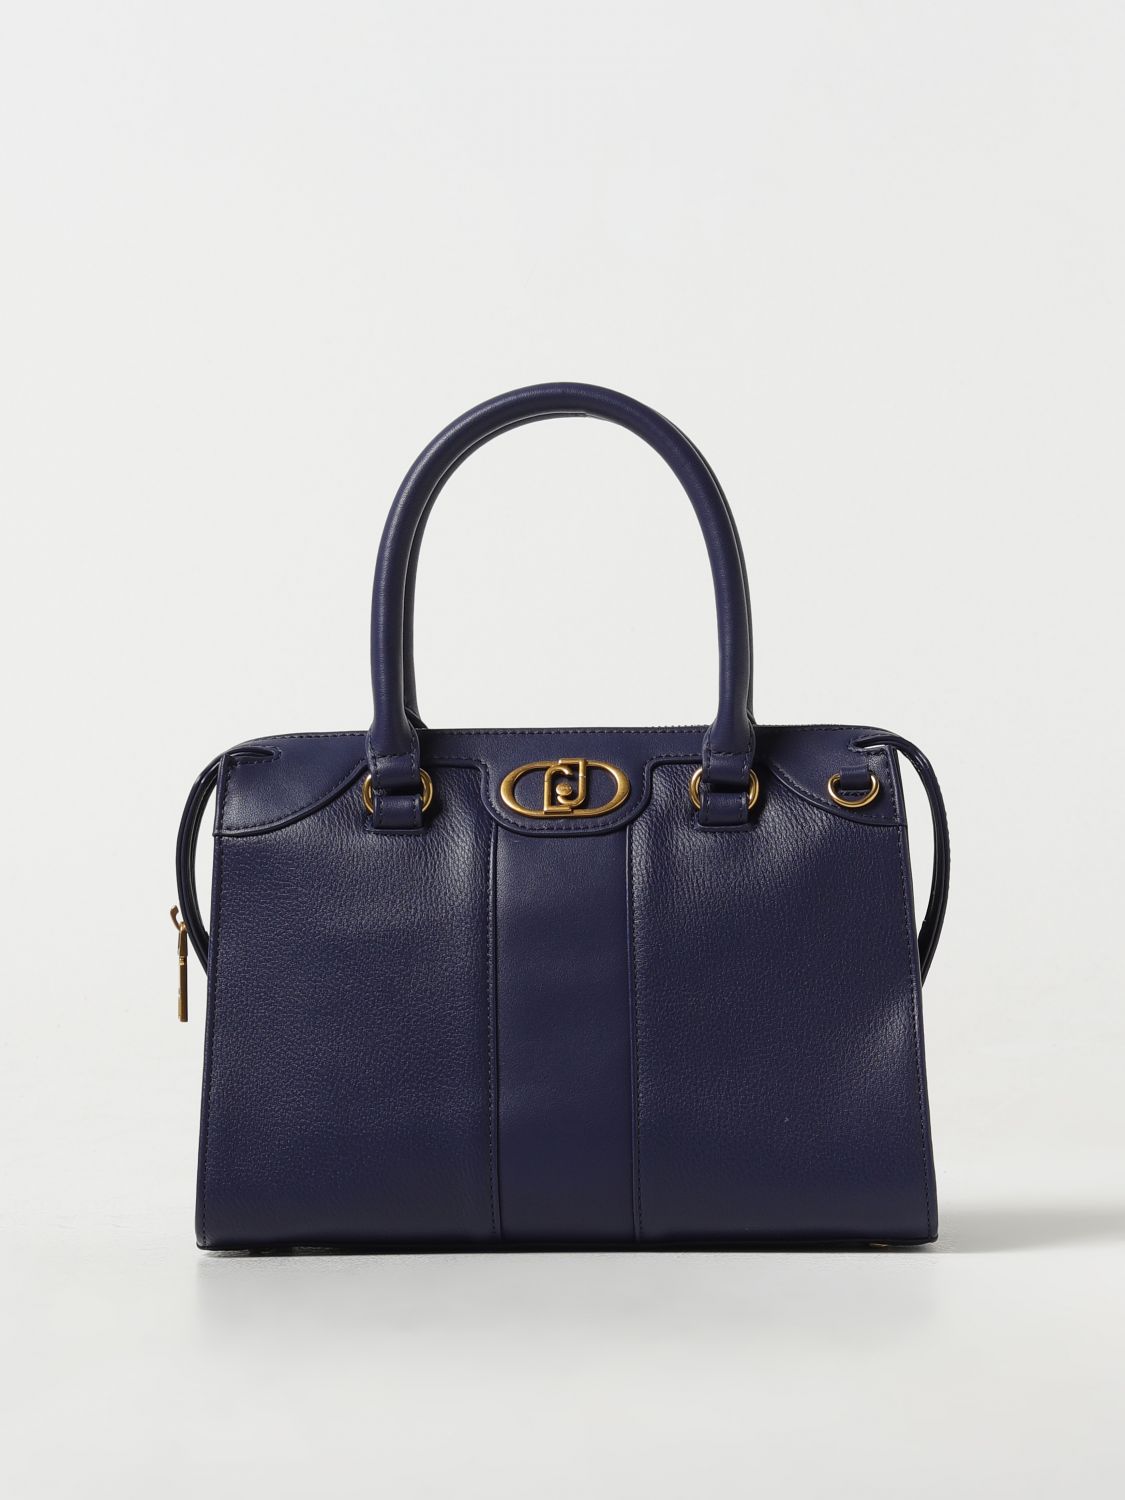 Liu •jo Handbag Liu Jo Woman Color Blue